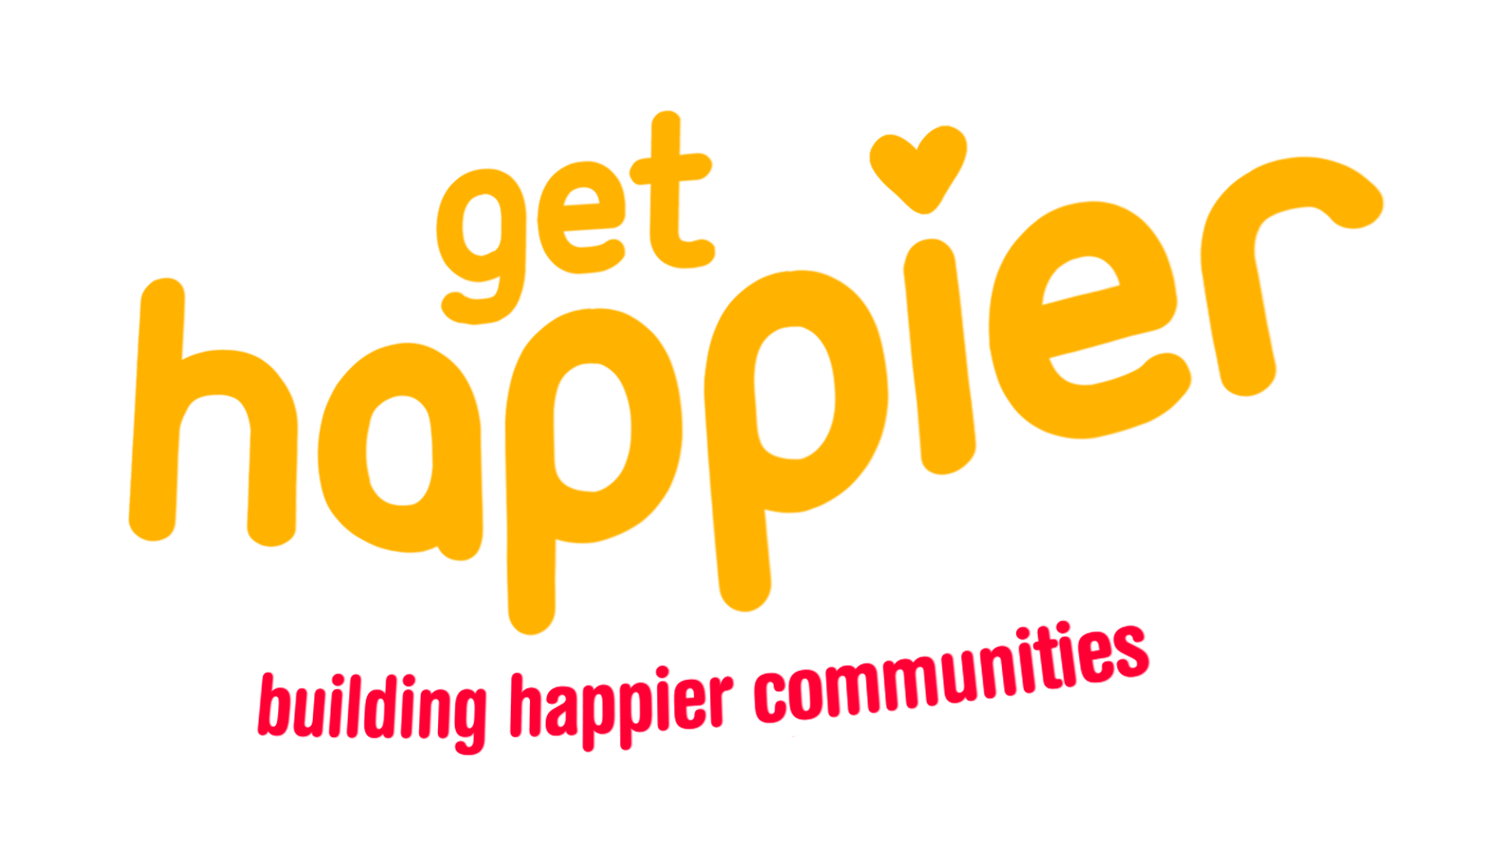 get happier